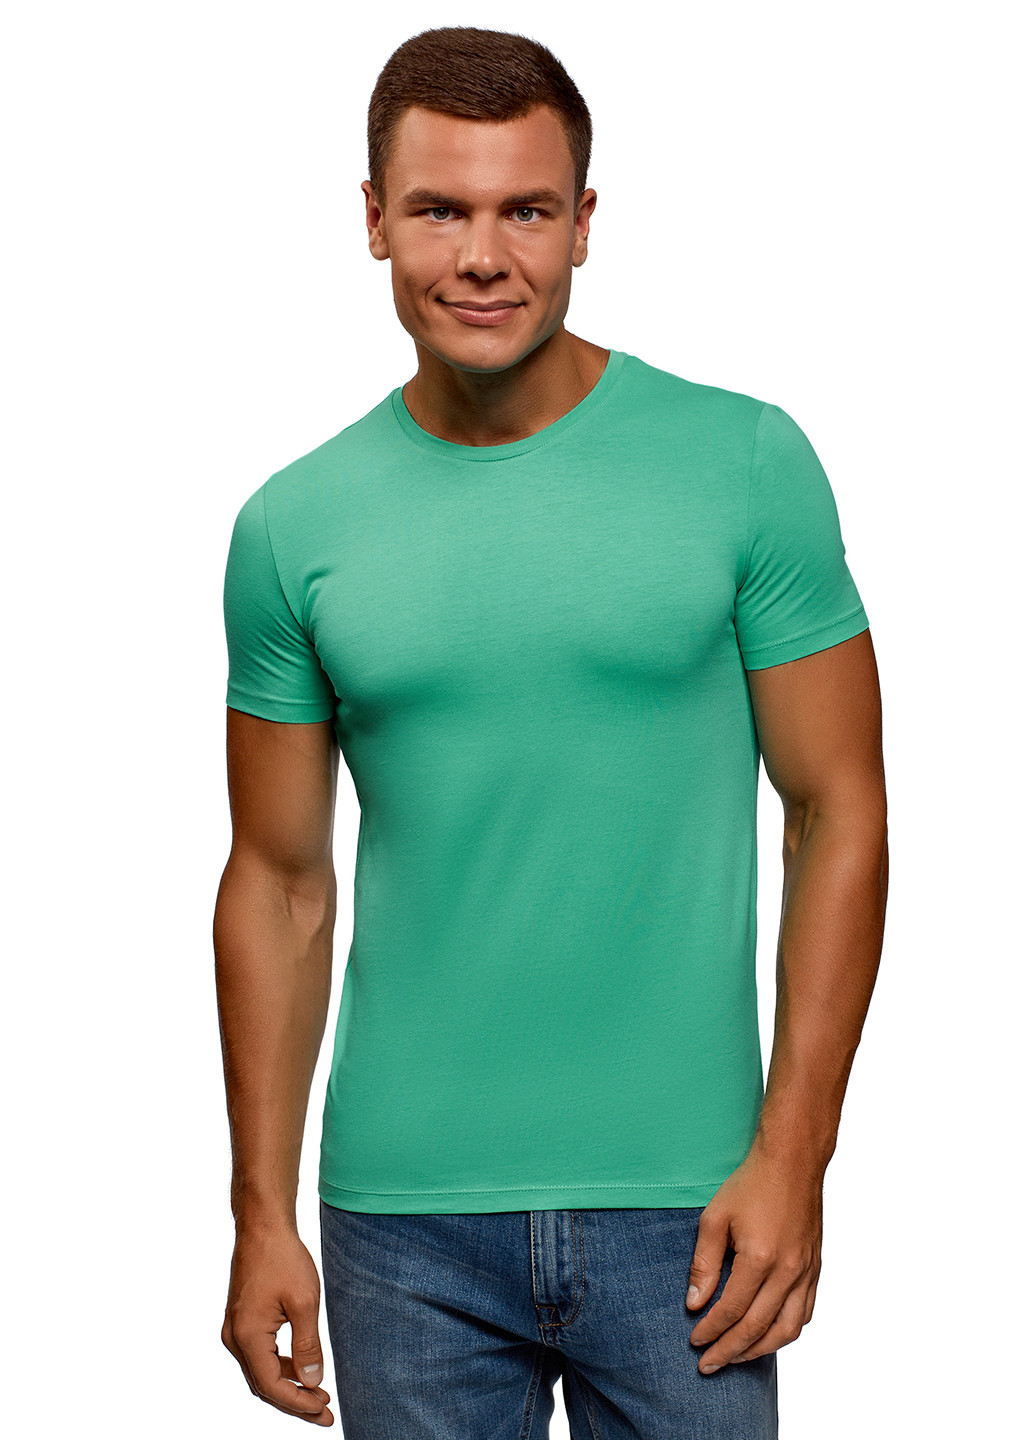 Зеленая футболка Oodji